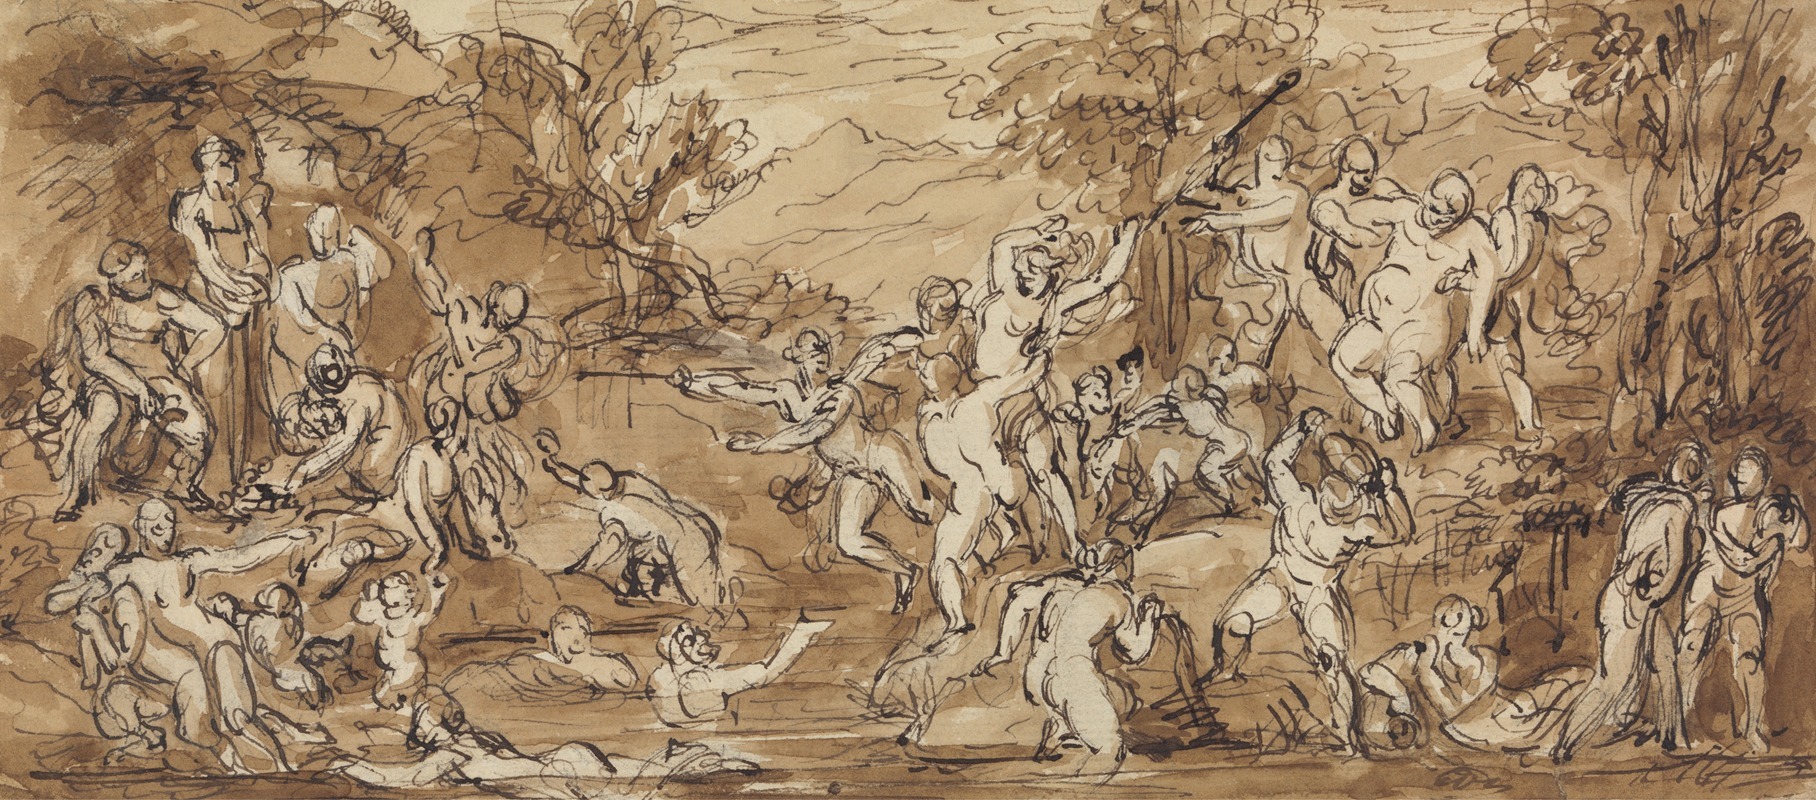 Robert Smirke - Figure Study of a Bacchanalia Celebration in a Wooded Landscape.